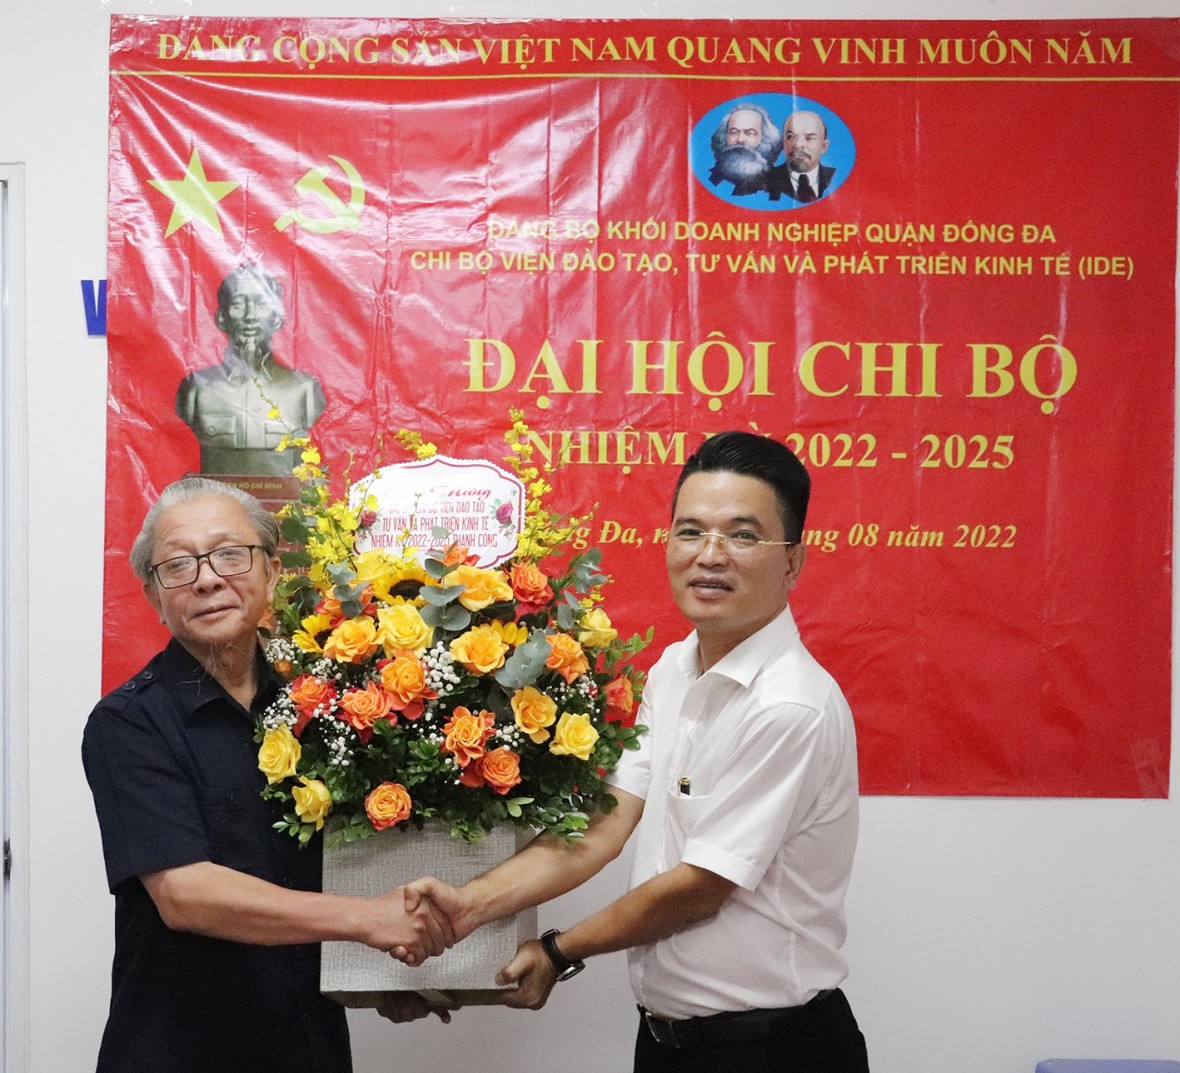 Ông Nguyễn Quốc Hải, Viện trưởng Viện Đào tạo, Tư vấn và Phát triển kinh tế (trái) tặng hoa chúc mừng Đại hội.